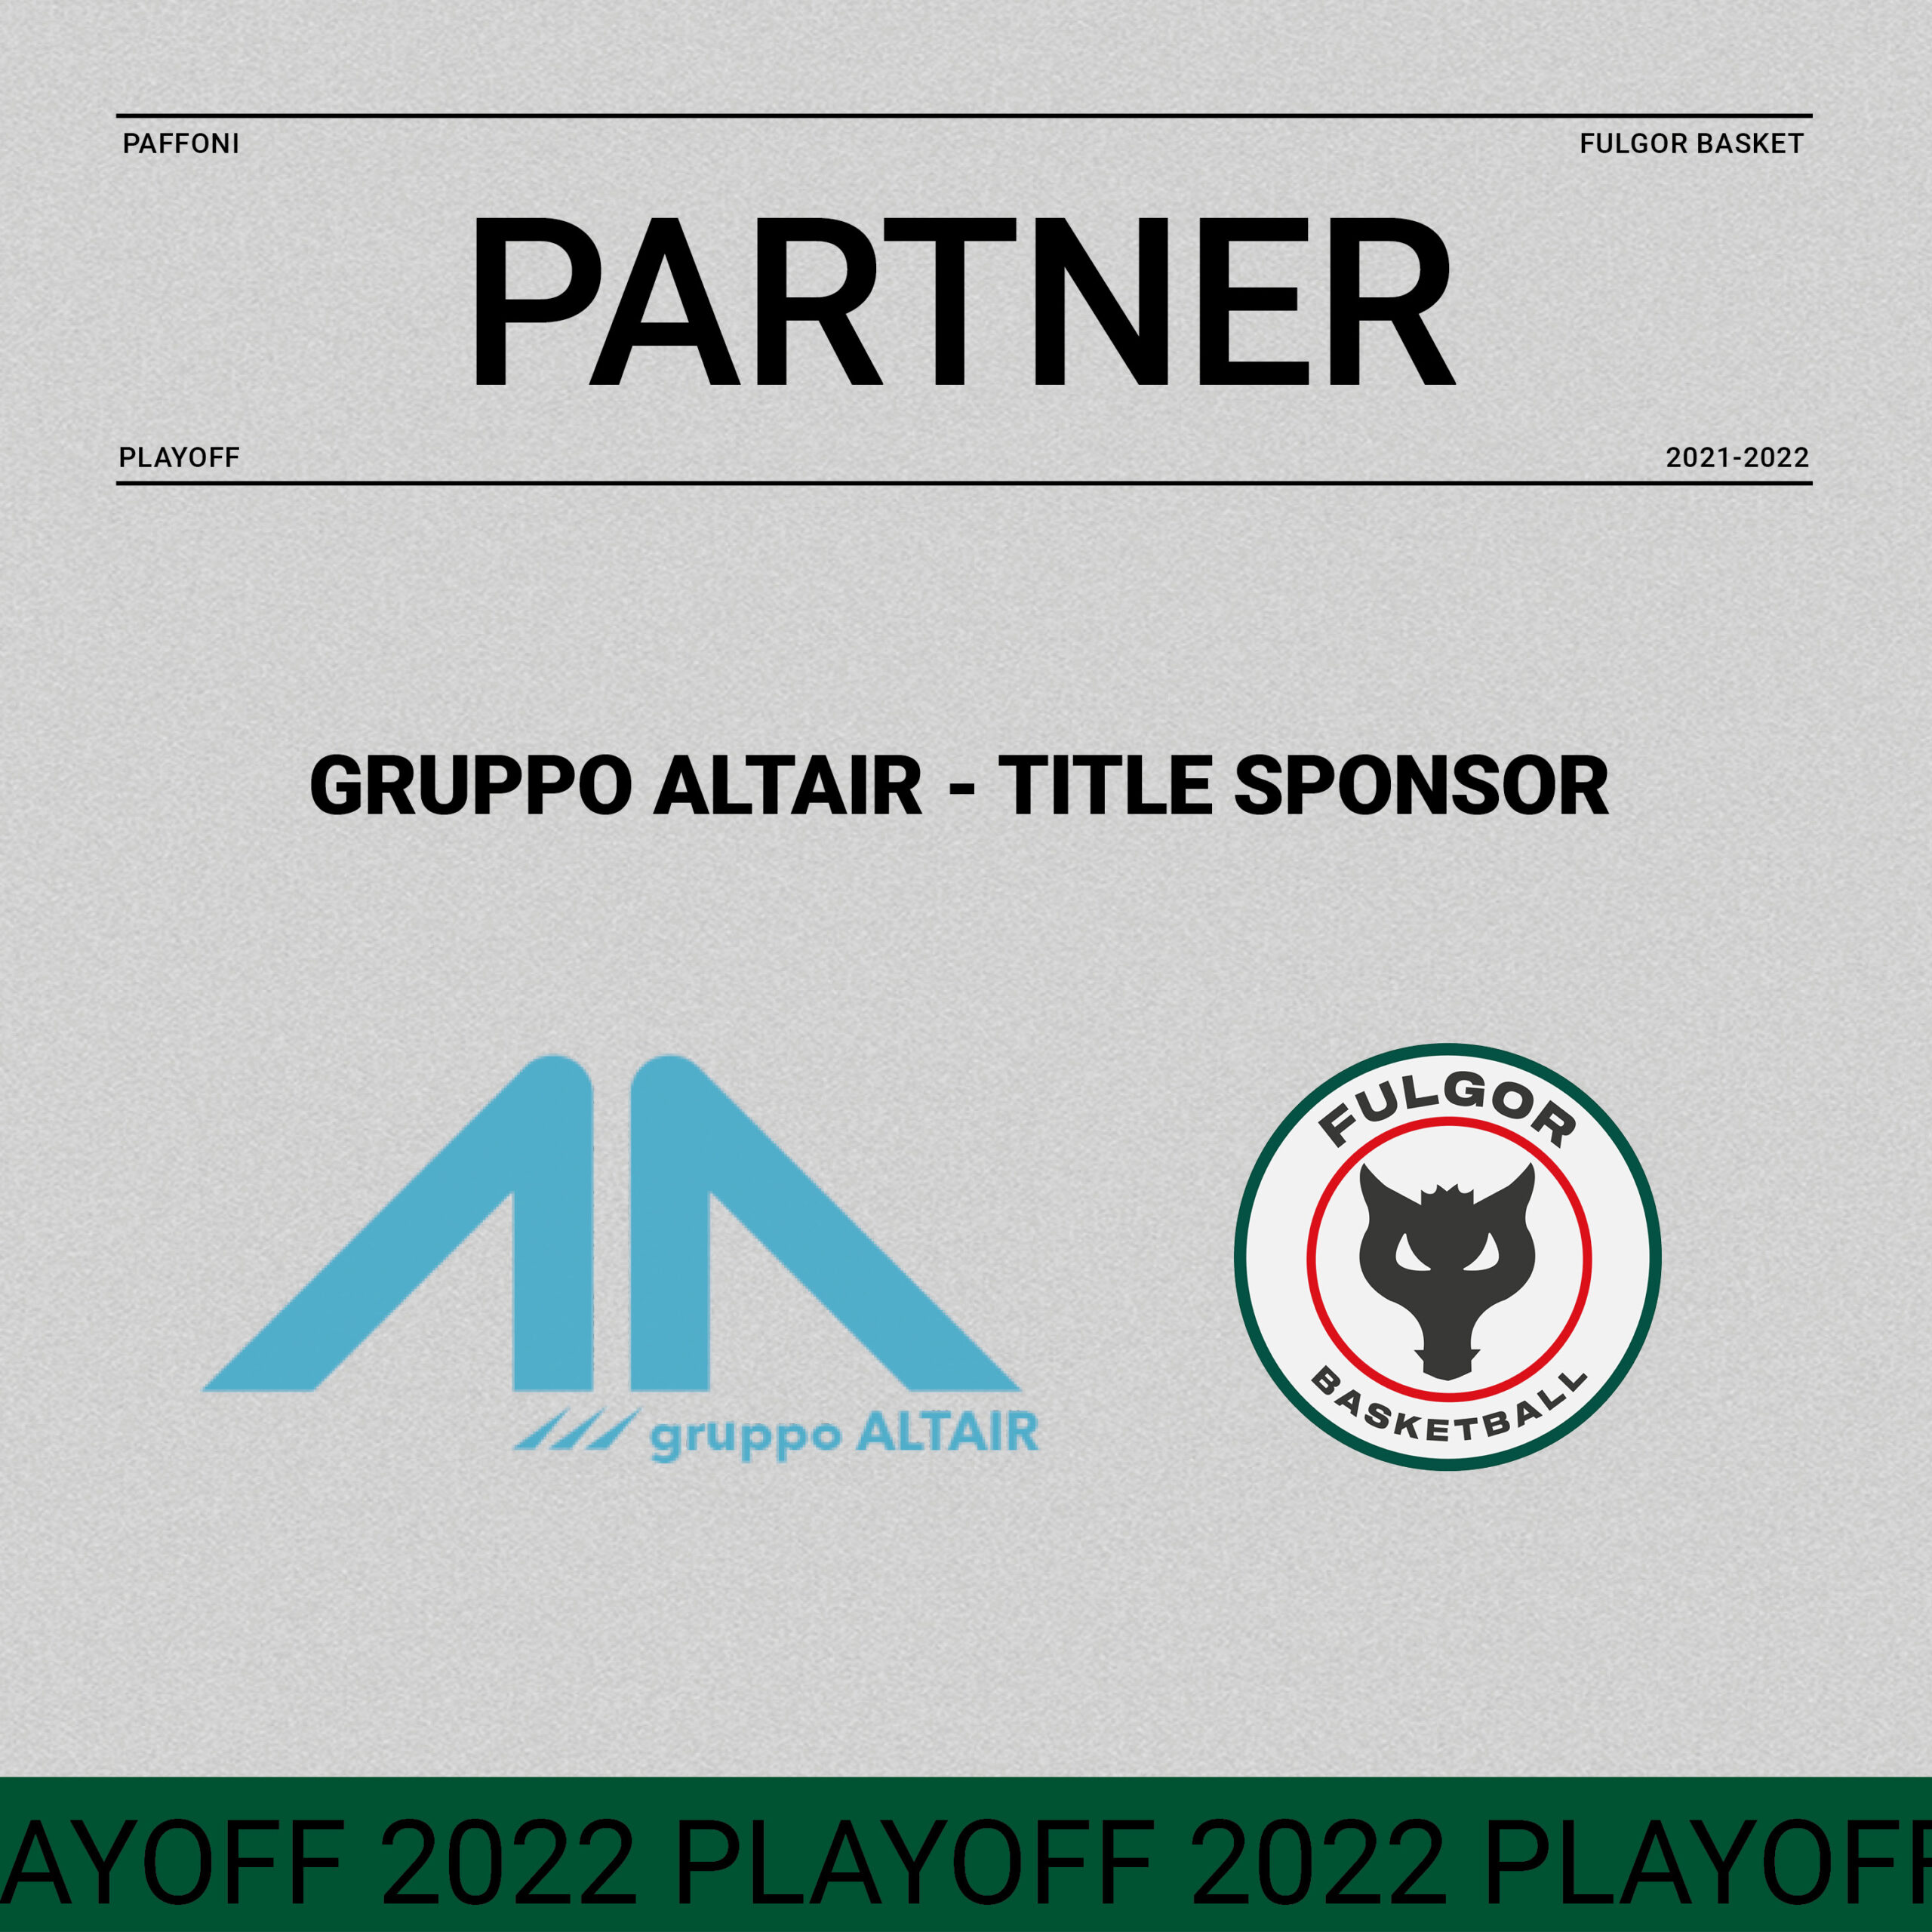 Prosegue il rapporto di collaborazione tra Fulgor Basket e il Gruppo Altair, title sponsor di questa parte finale dei playoff